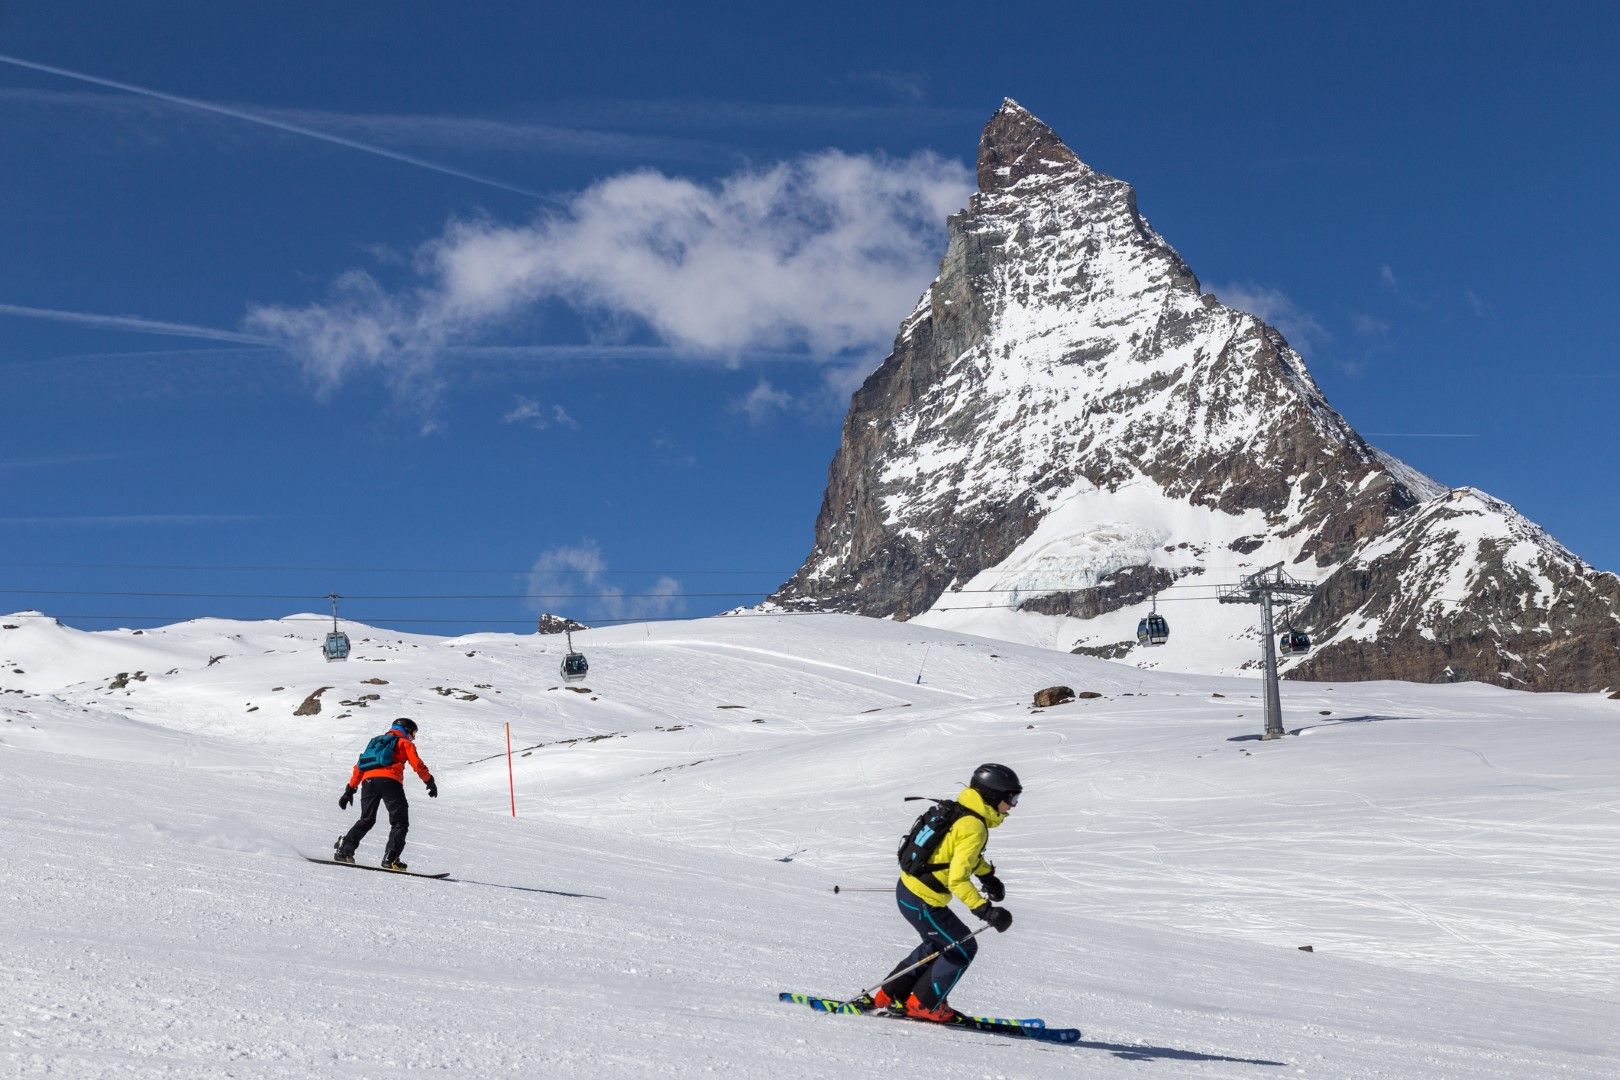 Да караш ски в Цермат покрай връх Матернхорн, където гондола те качва до над 3800 метра, е неописуемо преживяване